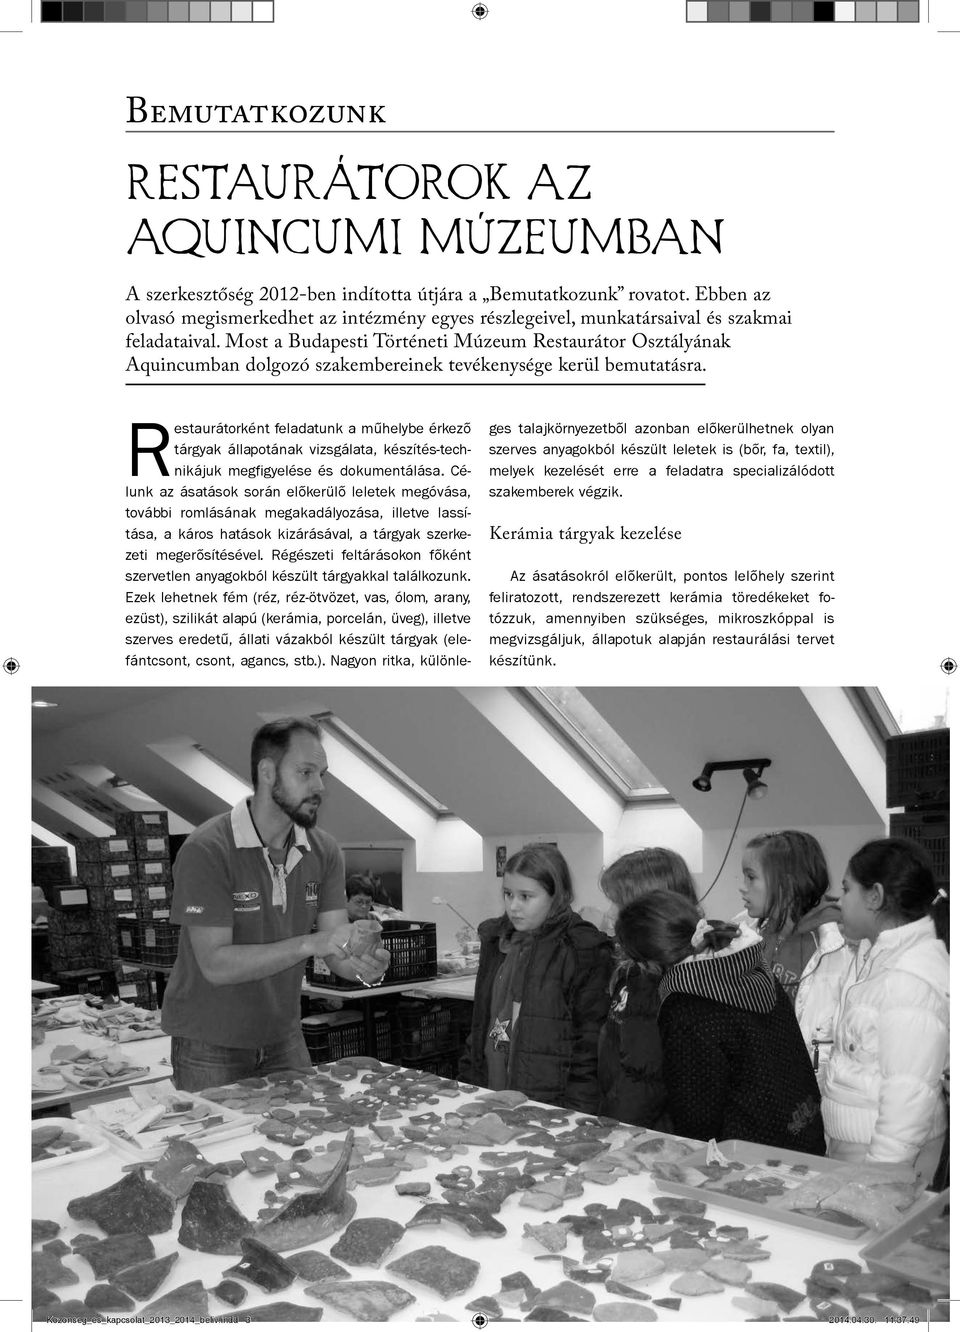 Most a Budapesti Történeti Múzeum Restaurátor Osztályának Aquincumban dolgozó szakembereinek tevékenysége kerül bemutatásra.